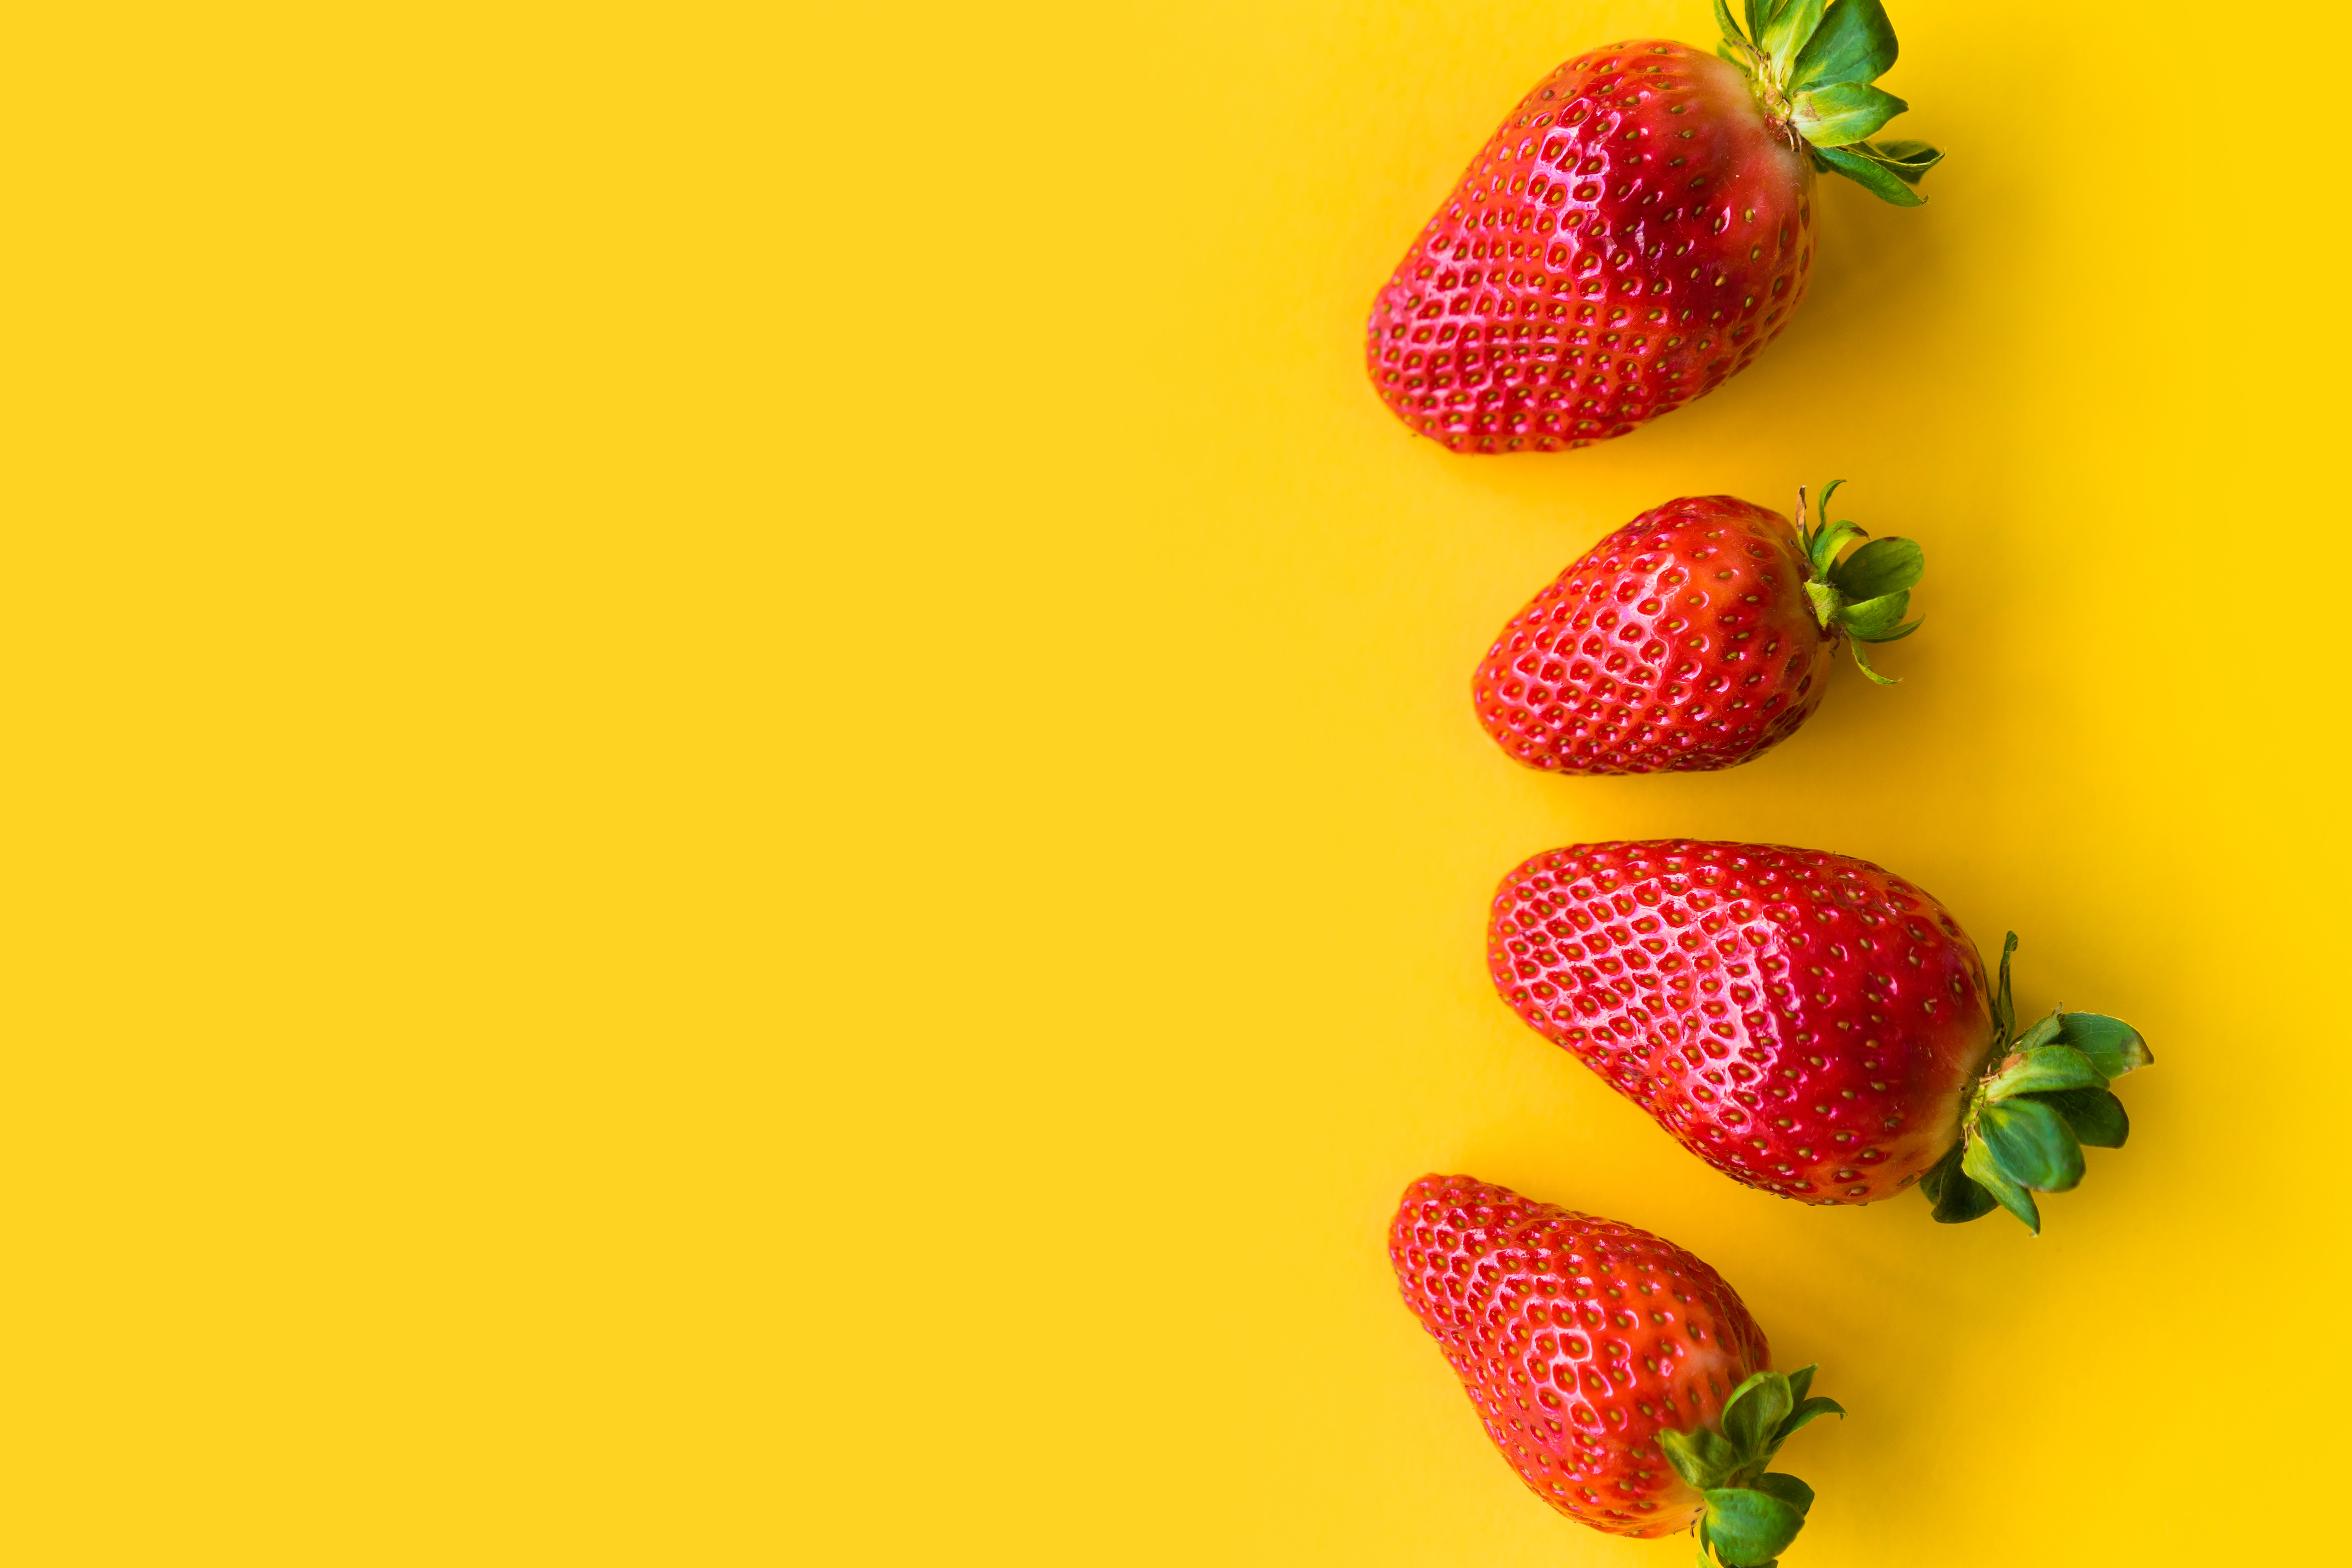 Strawberries With Yellow Background Stock Photo Picjumbo